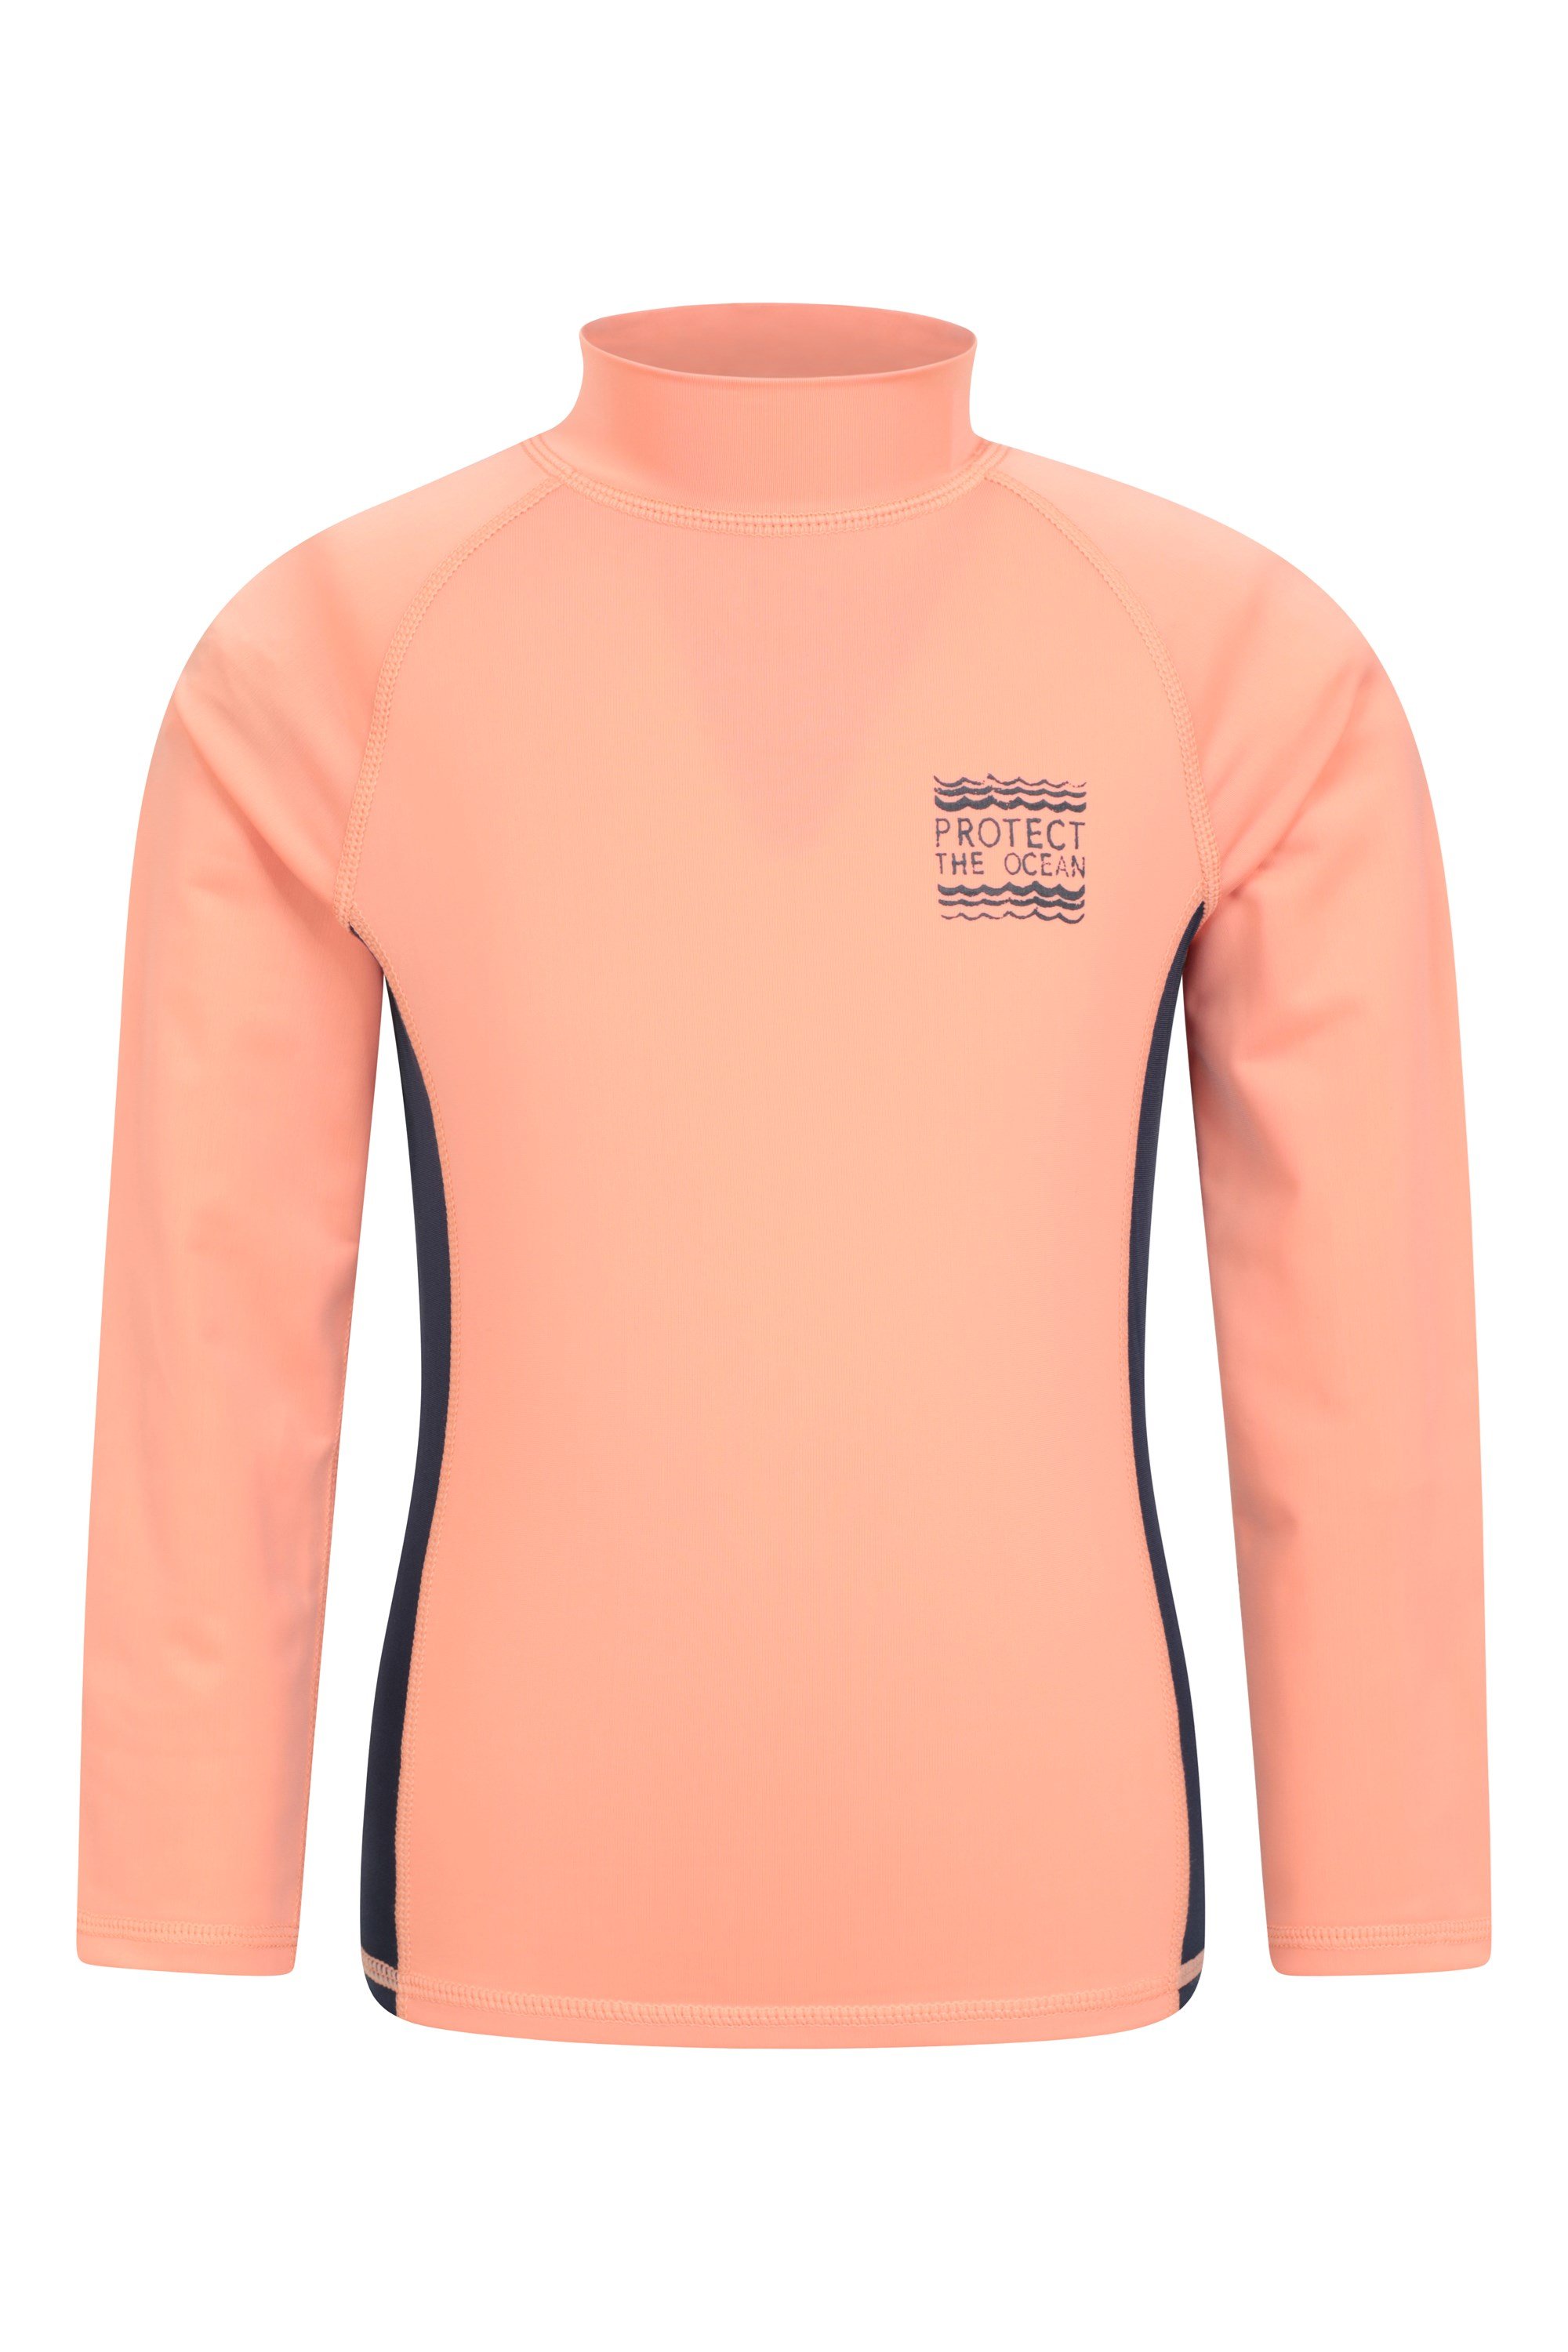 Steve Backshall Ocean Kids Long Sleeve Rash Vest - Pink